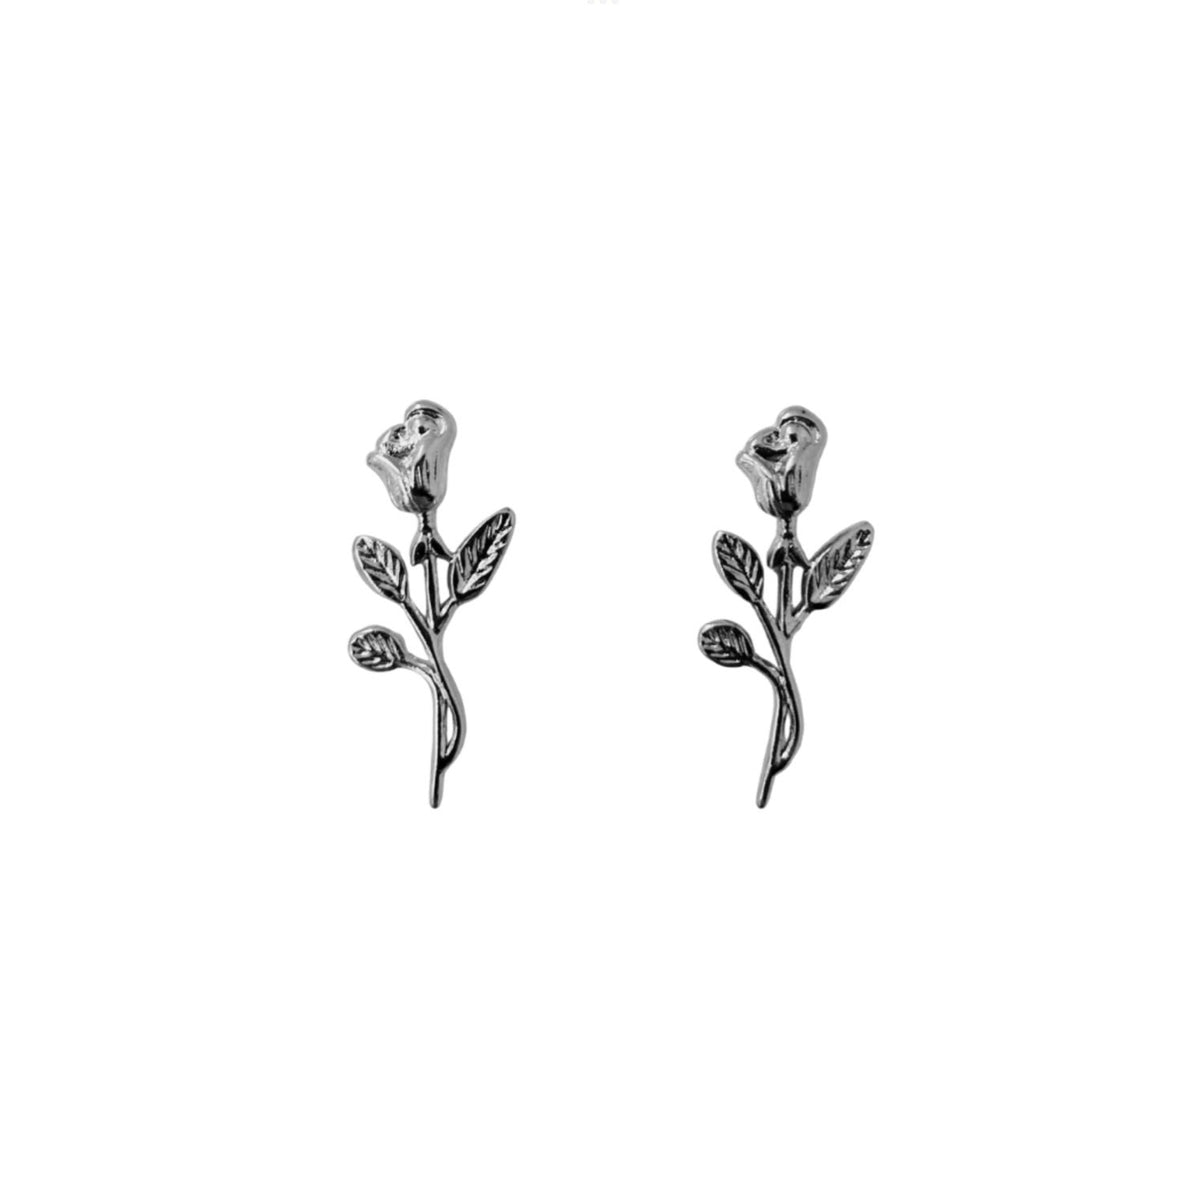 MUSE earrings - Silver